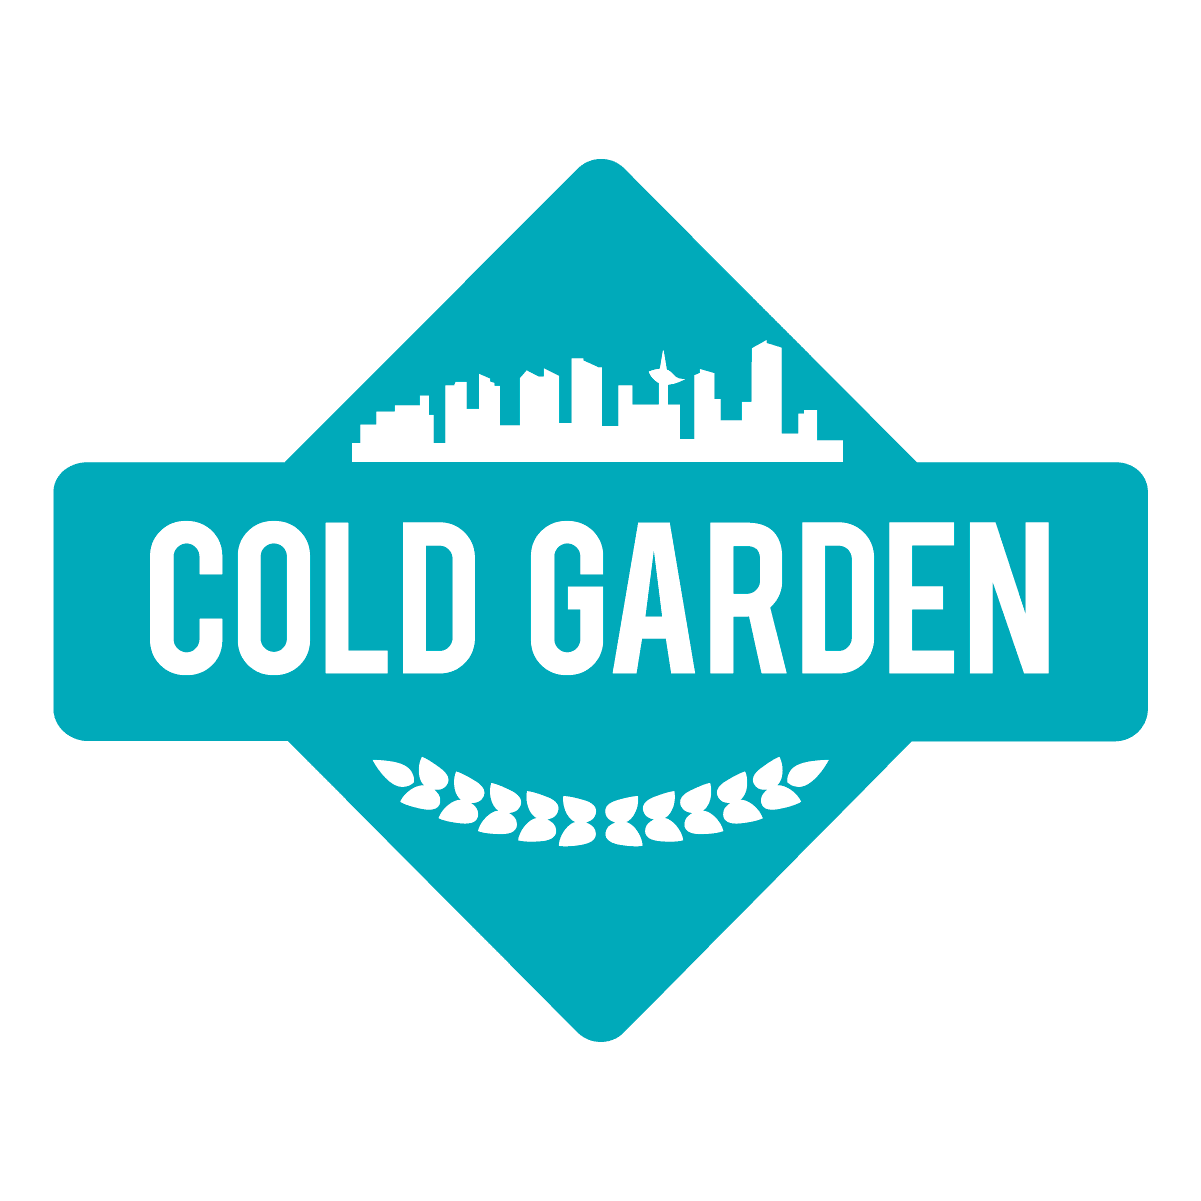 Cold Garden logo